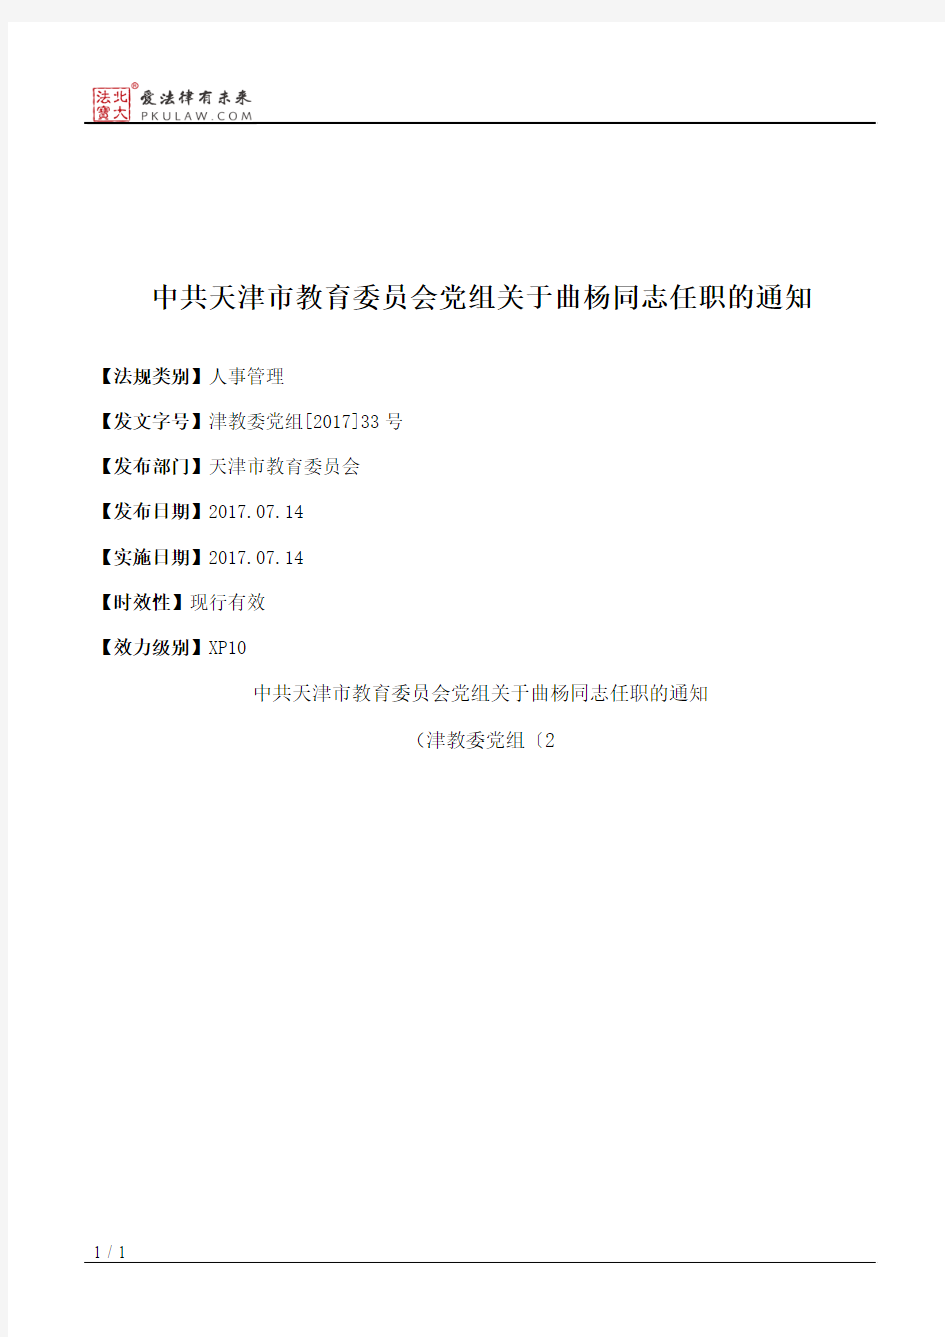 中共天津市教育委员会党组关于曲杨同志任职的通知